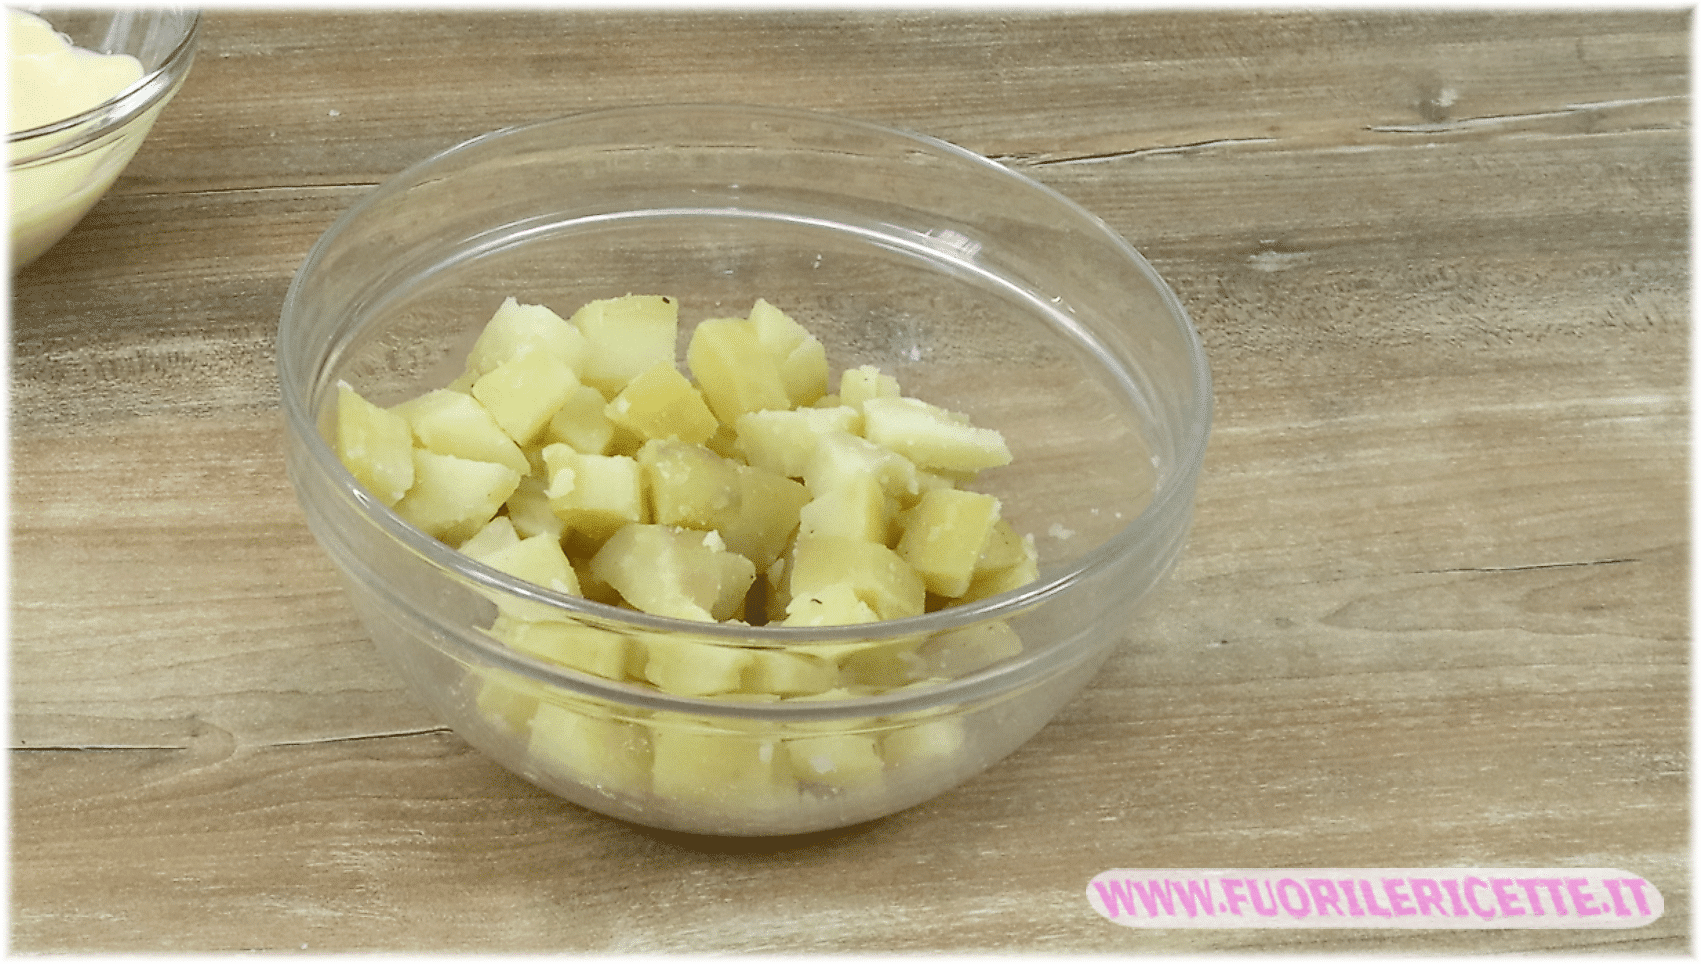 Taglia le patate a fette o a cubetti e mettile in una ciotola